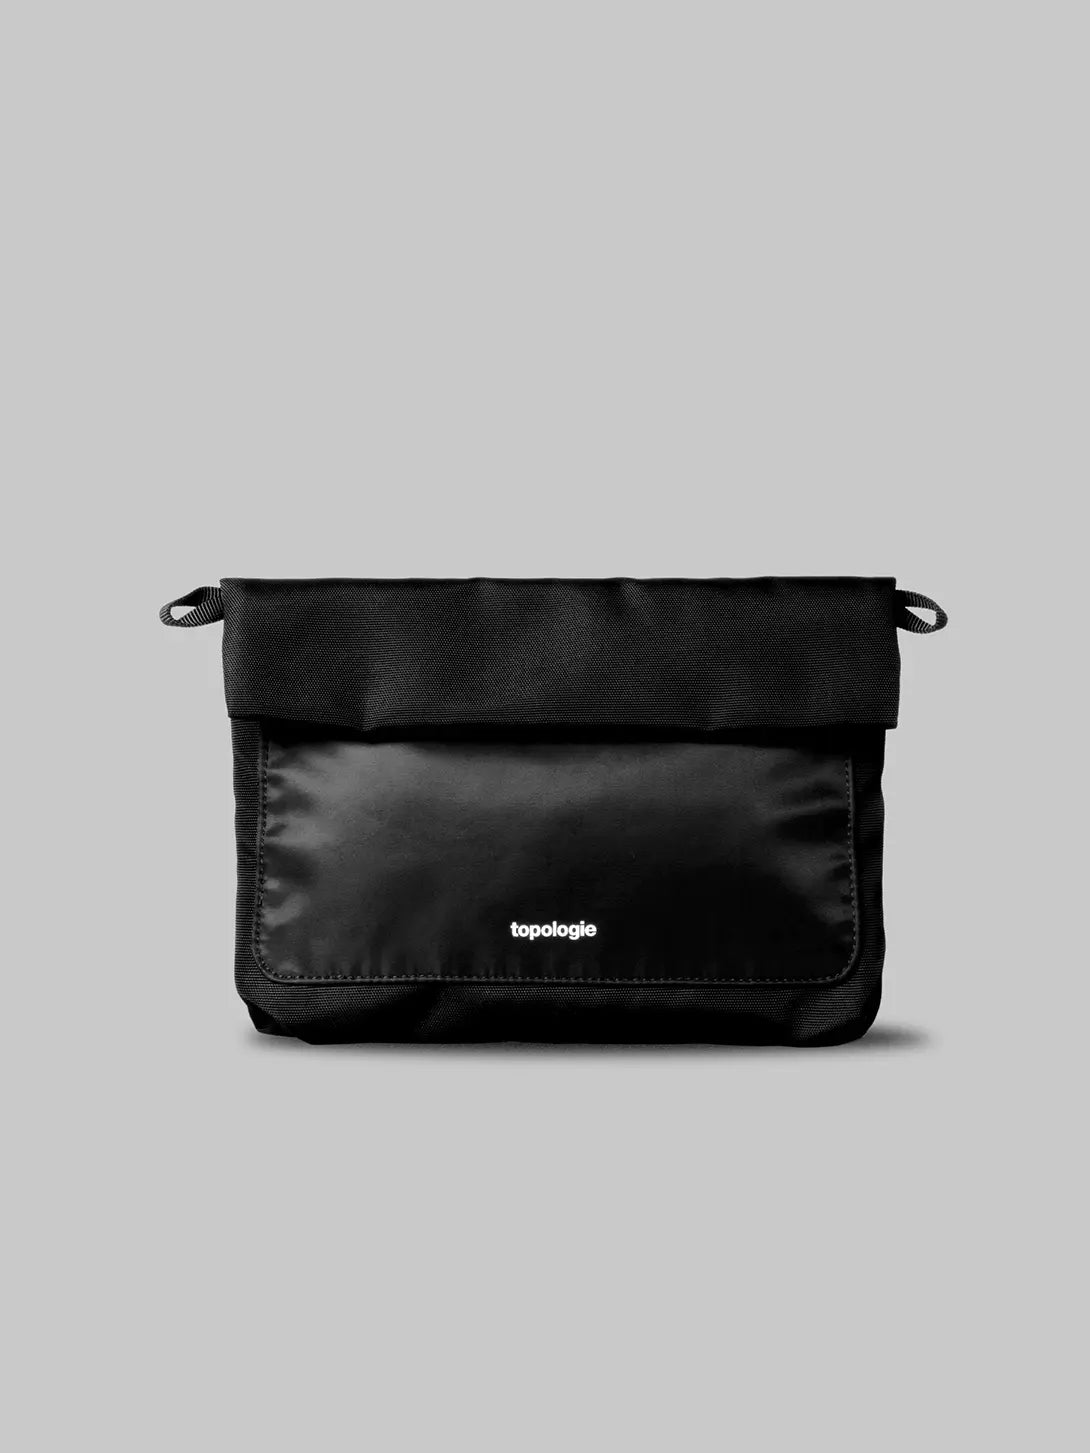 Black Musette Topologie Bag